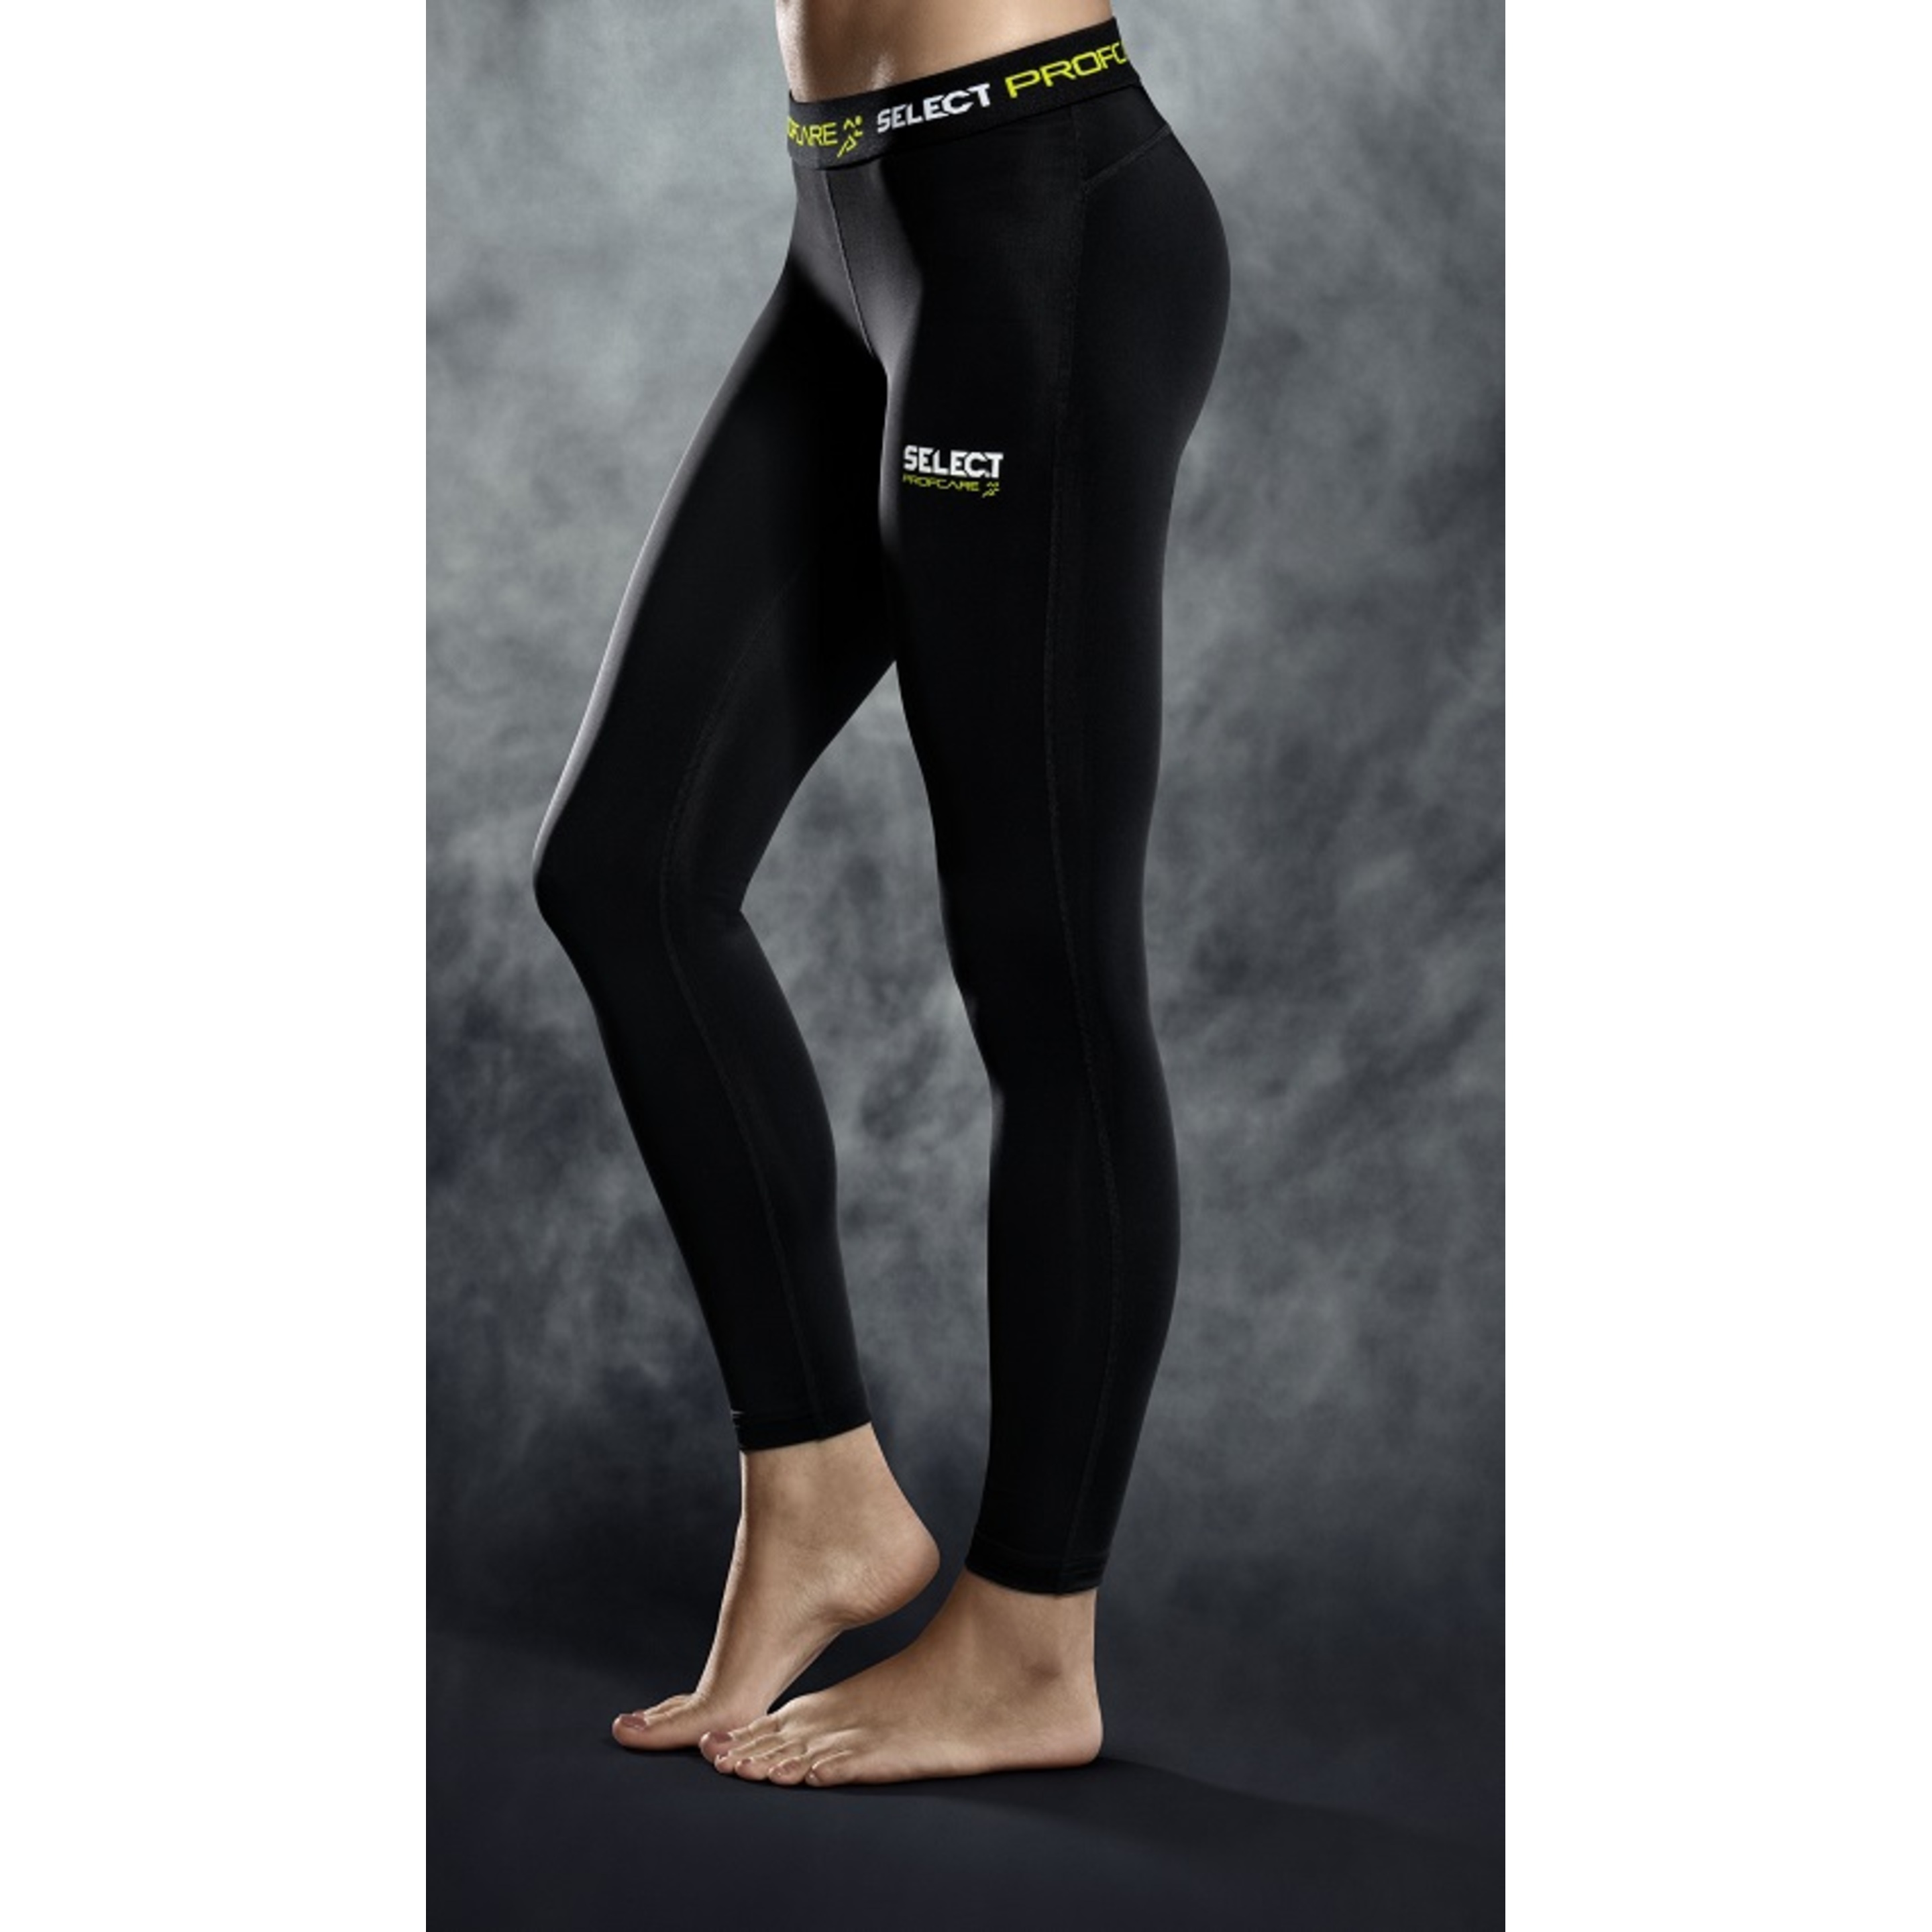 Pantimedias De Compresión Mujer Select 6406w - Negro - Pantalones Comprésion  MKP